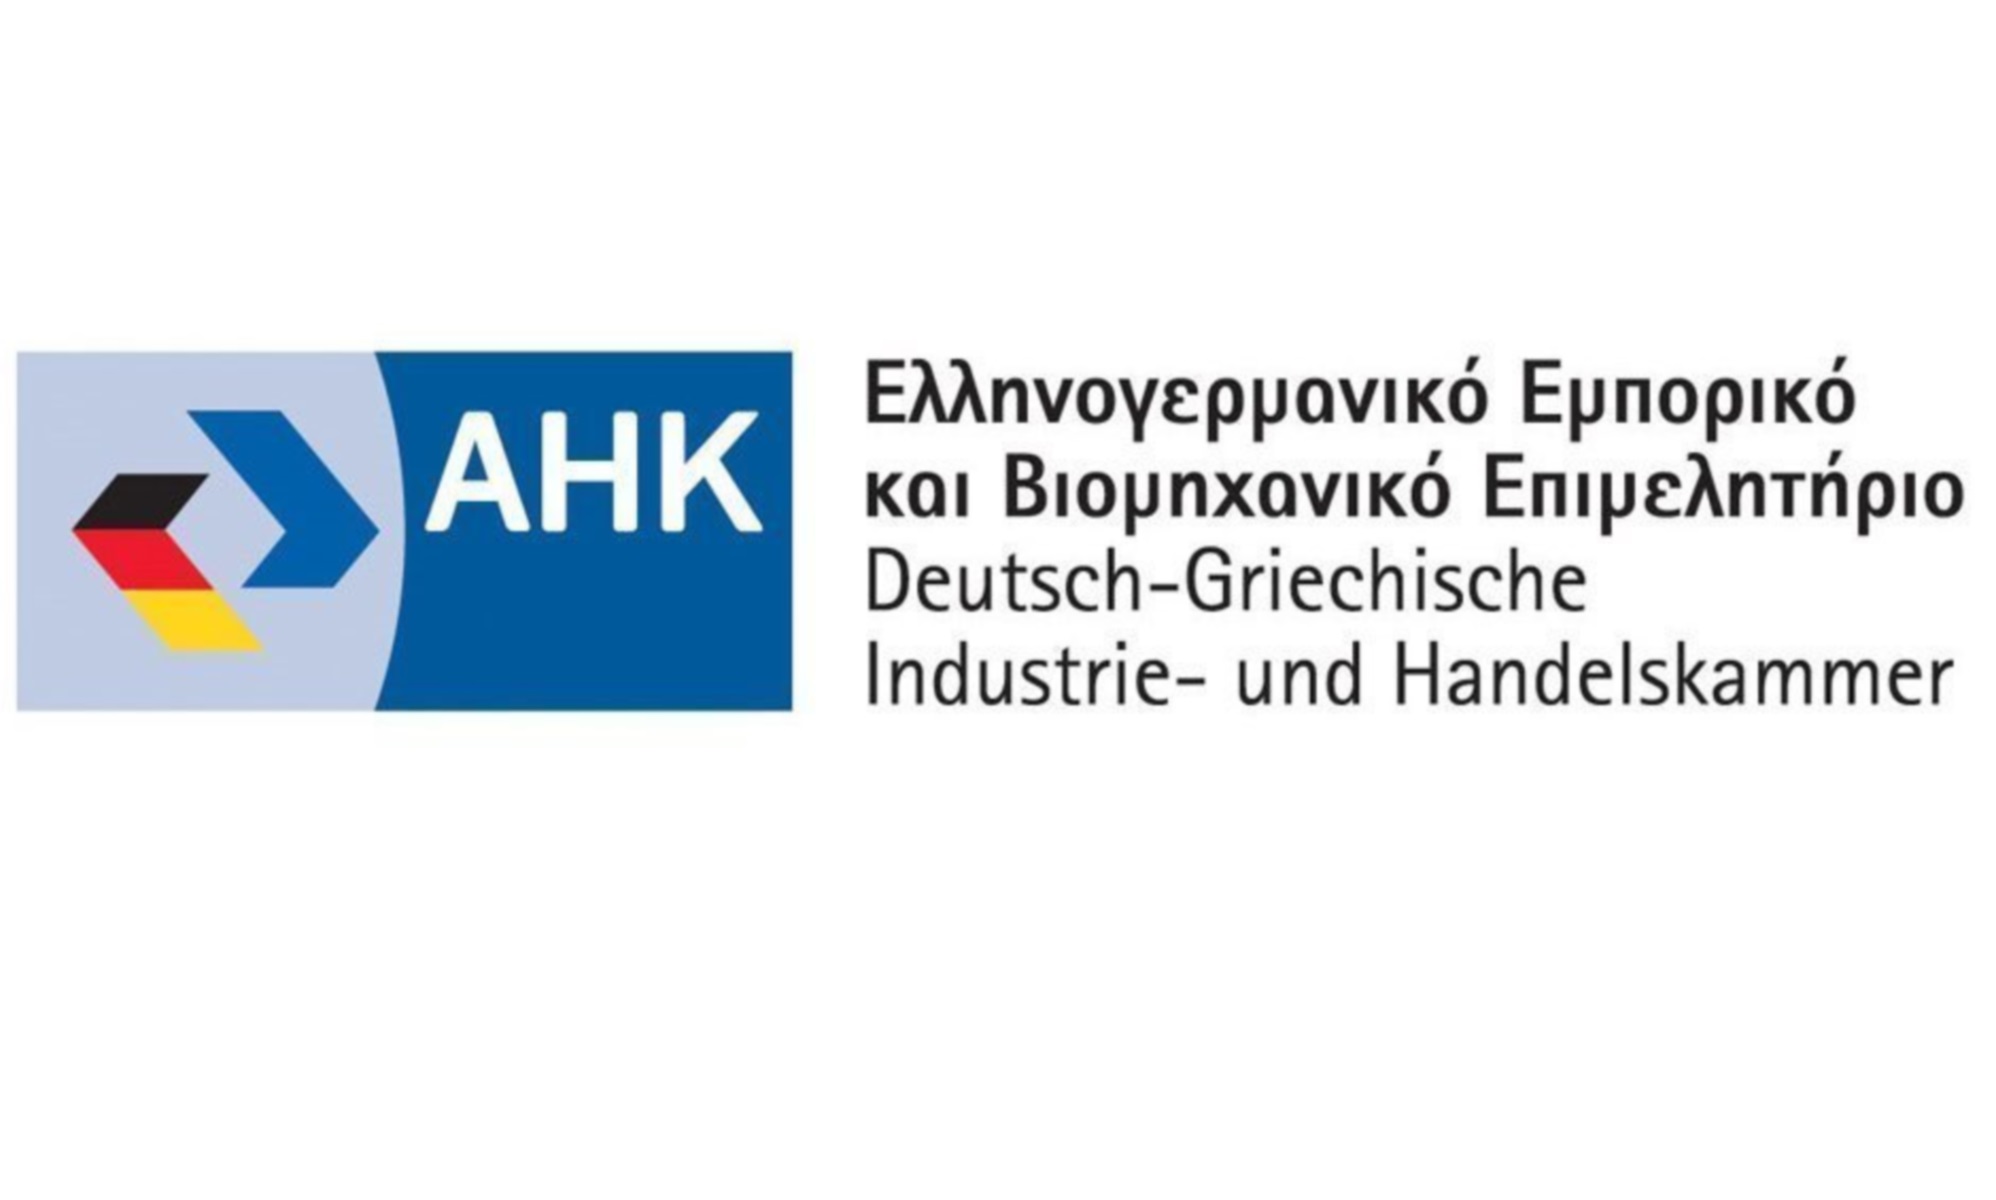 Ελληνογερμανικό Εμπορικό και Βιομηχανικό Επιμελητήριο: Επιβάλλονται δυναμικότερα μέτρα ανακούφισης της αγοράς